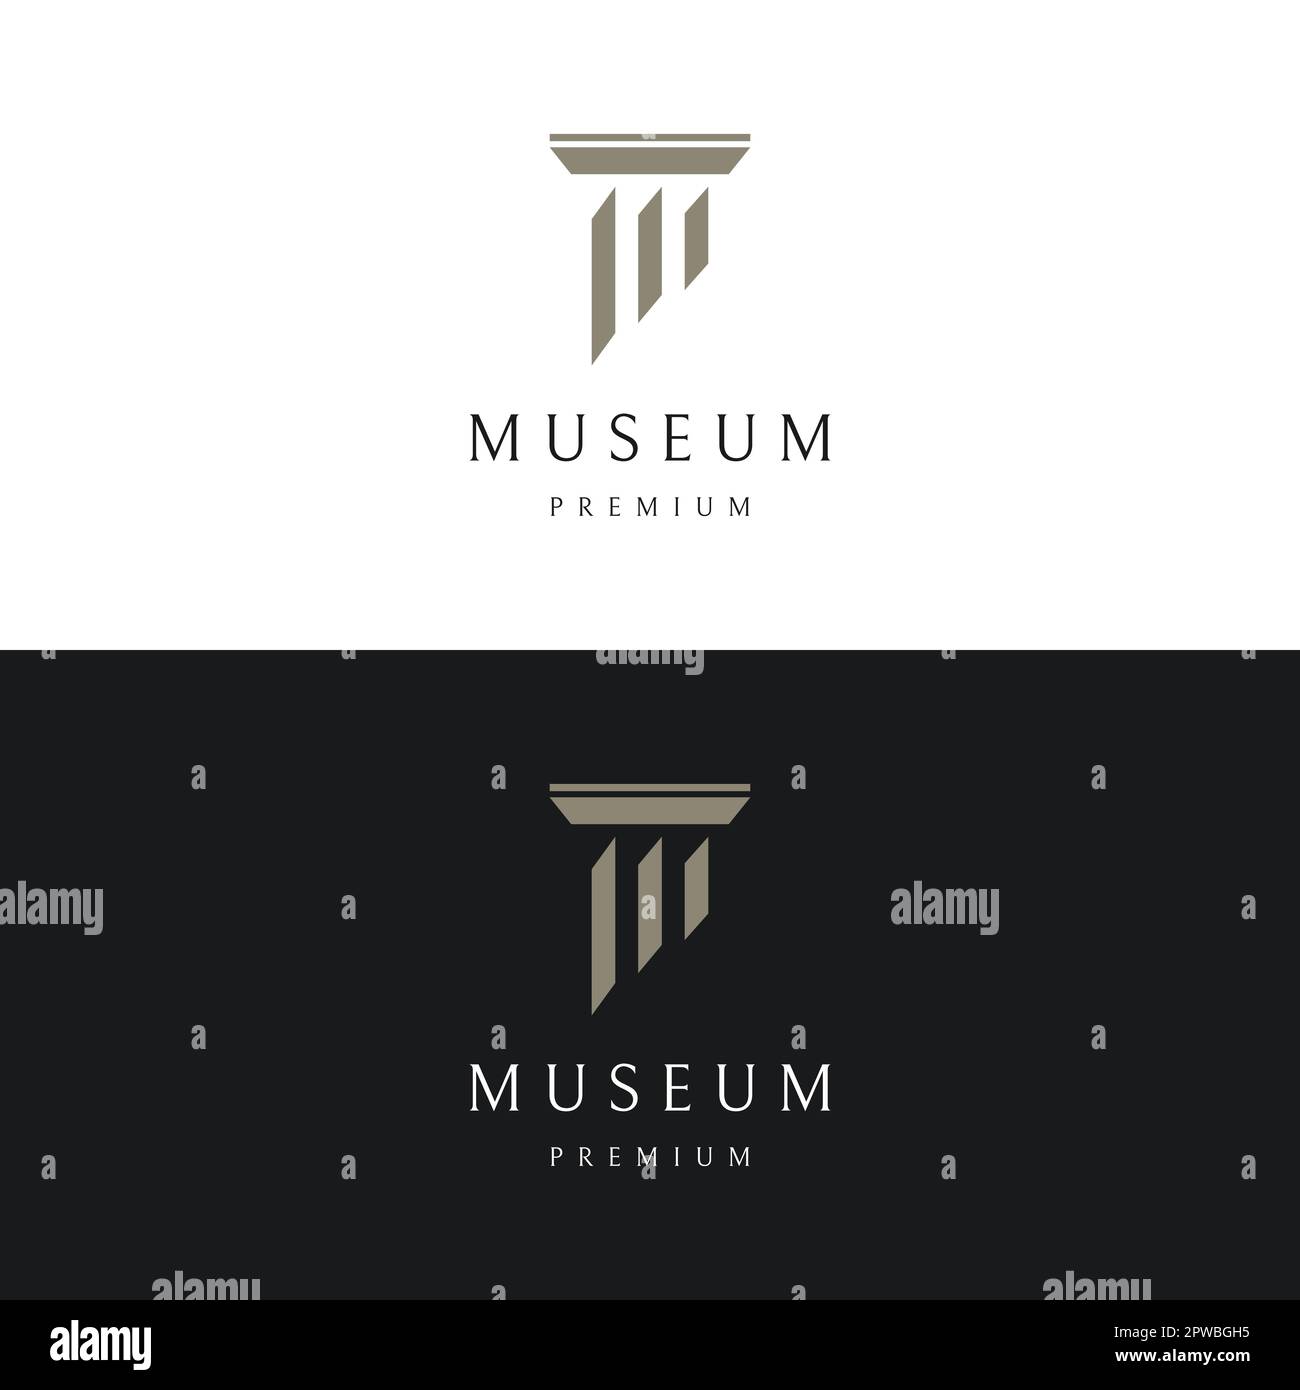 Musées, colonnes de musée, lignes de musée, logos de pilier de musée. Musées aux concepts minimalistes et modernes. Les logos peuvent être utilisés pour les entreprises, les musées et les entreprises. Illustration de Vecteur